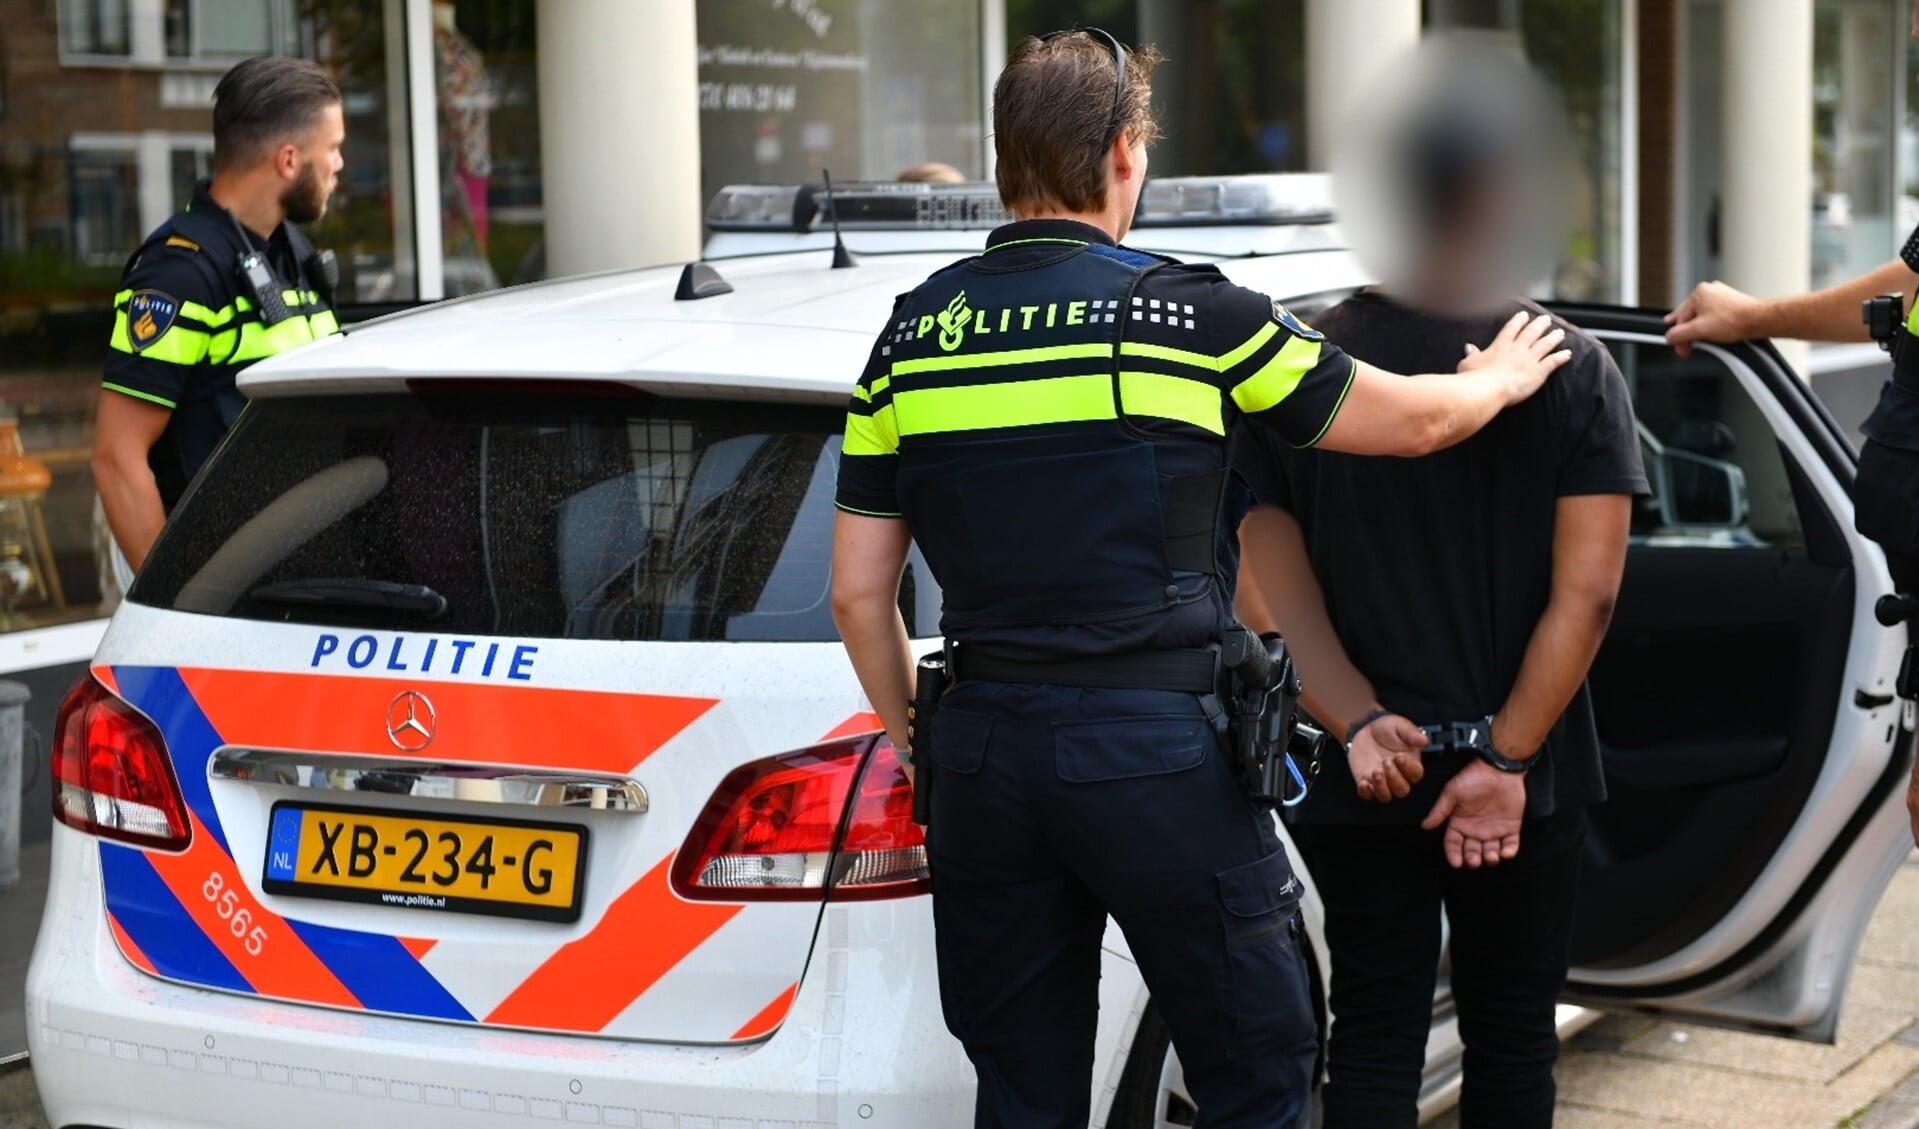 Een van de arrestanten wordt door de politie weggeleid en in een politieauto naar het bureau vervoerd voor ondervraging (foto: Bob van Keulen).